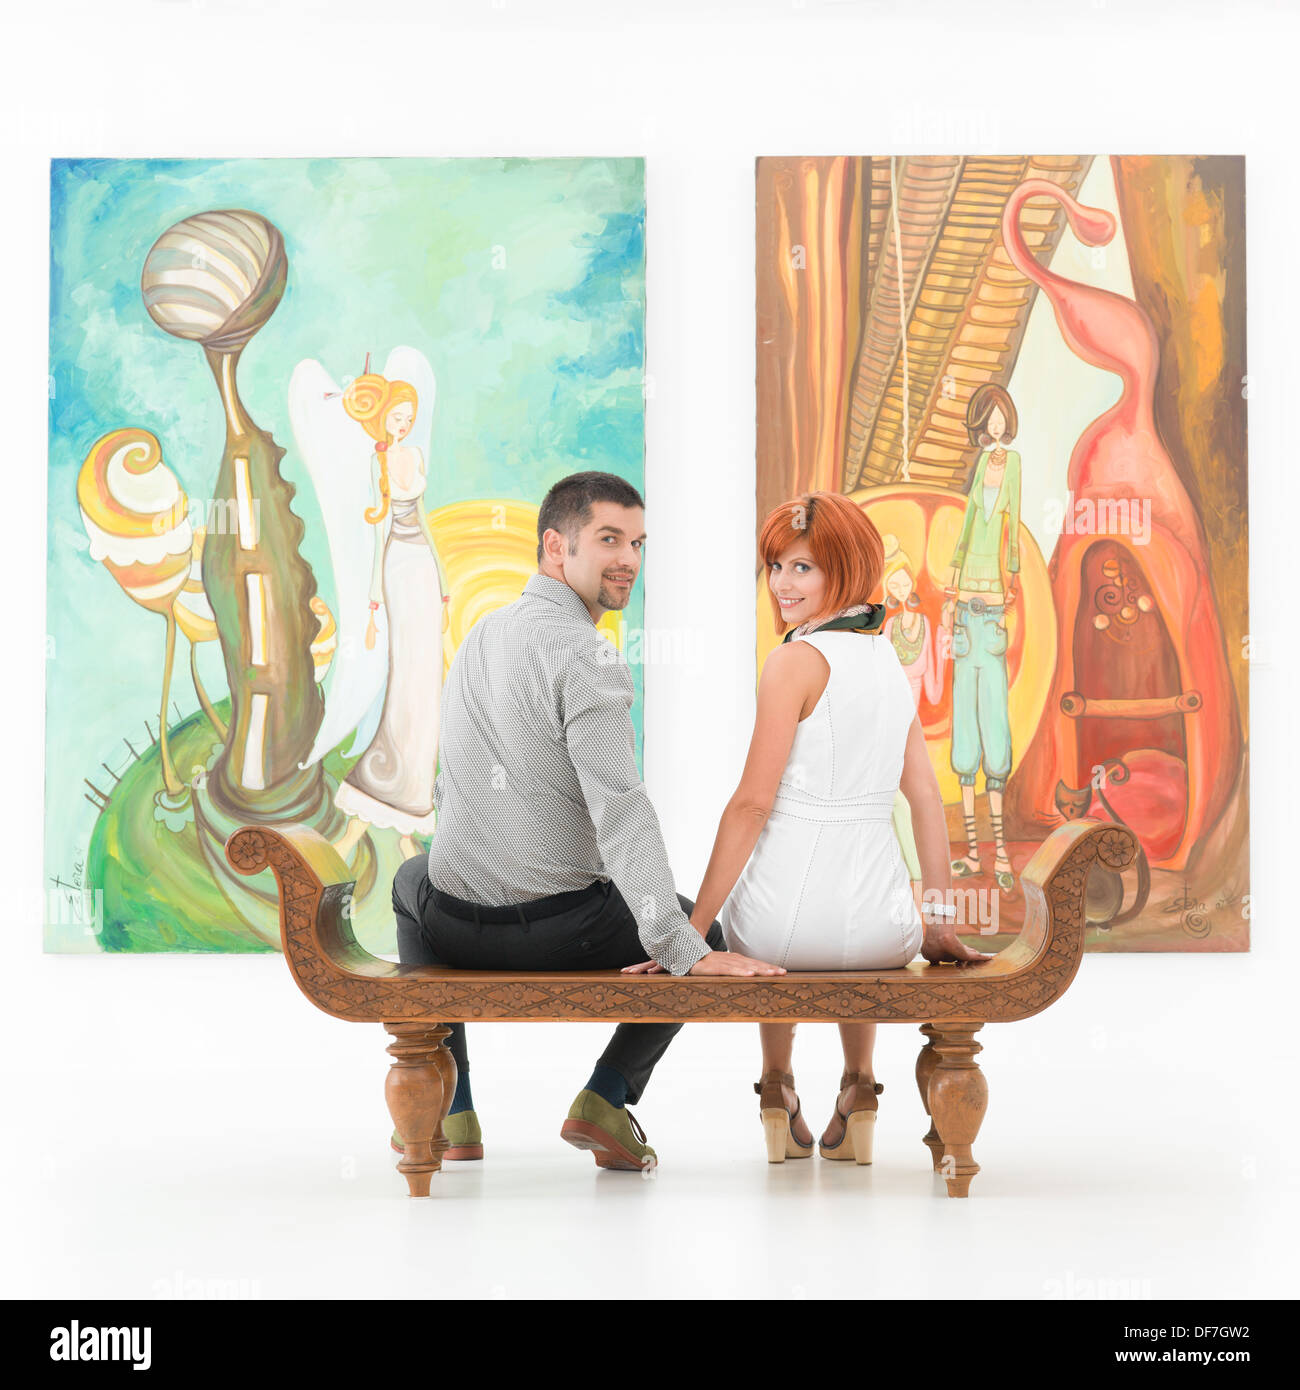 Jeune couple assis sur un banc de bois devant de grands tableaux colorés holding hands and smiling Banque D'Images